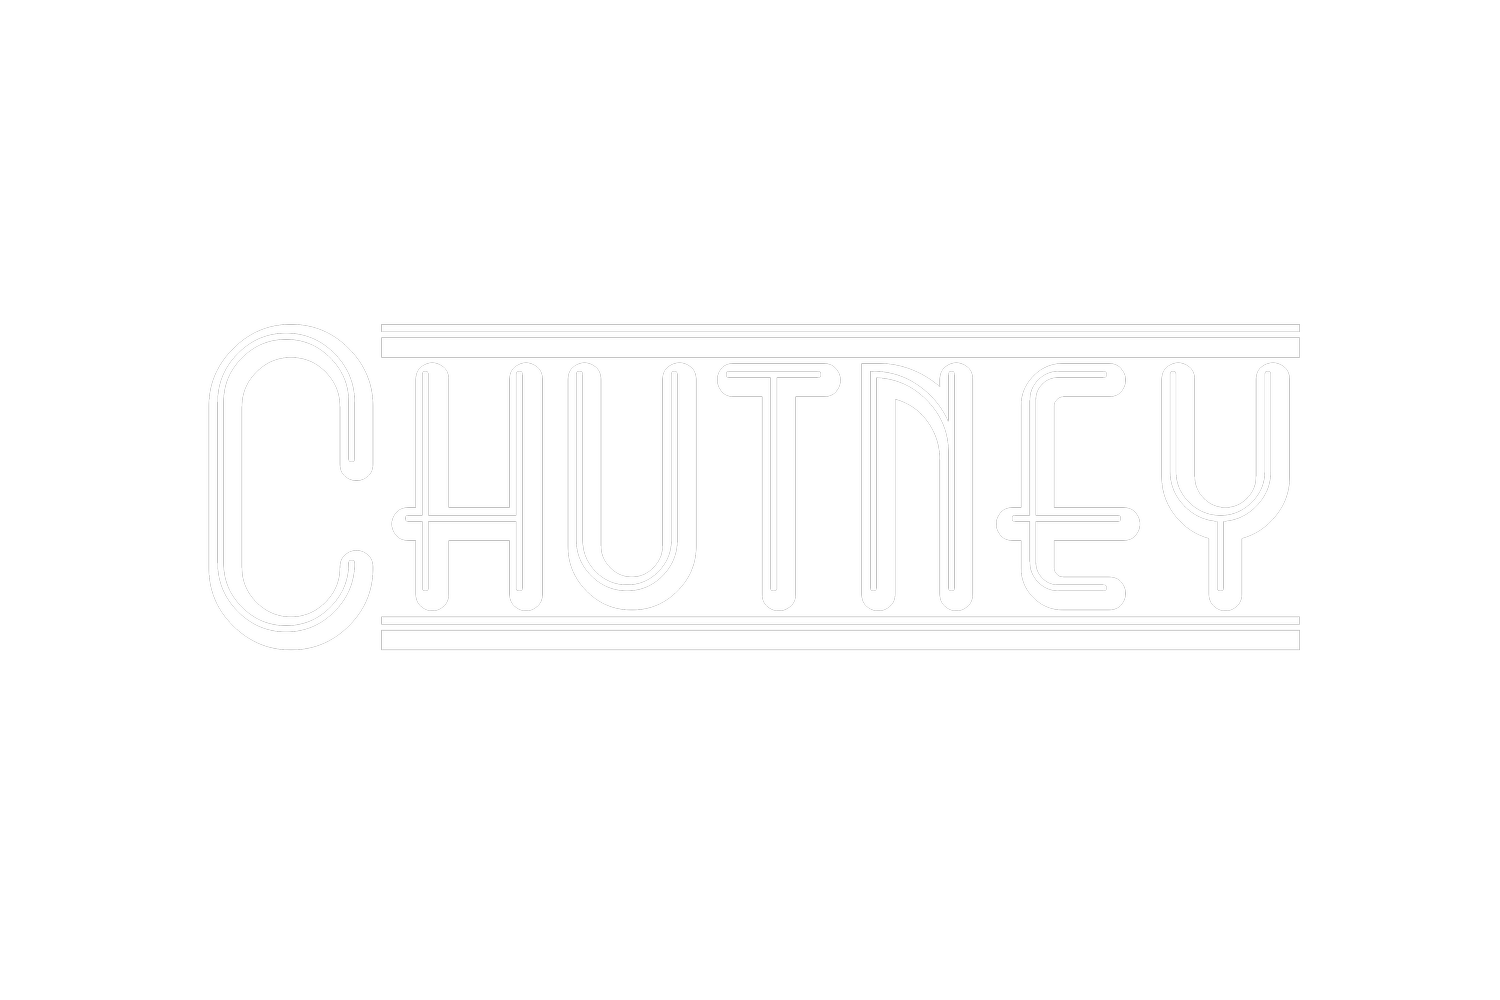 CHUTNEY